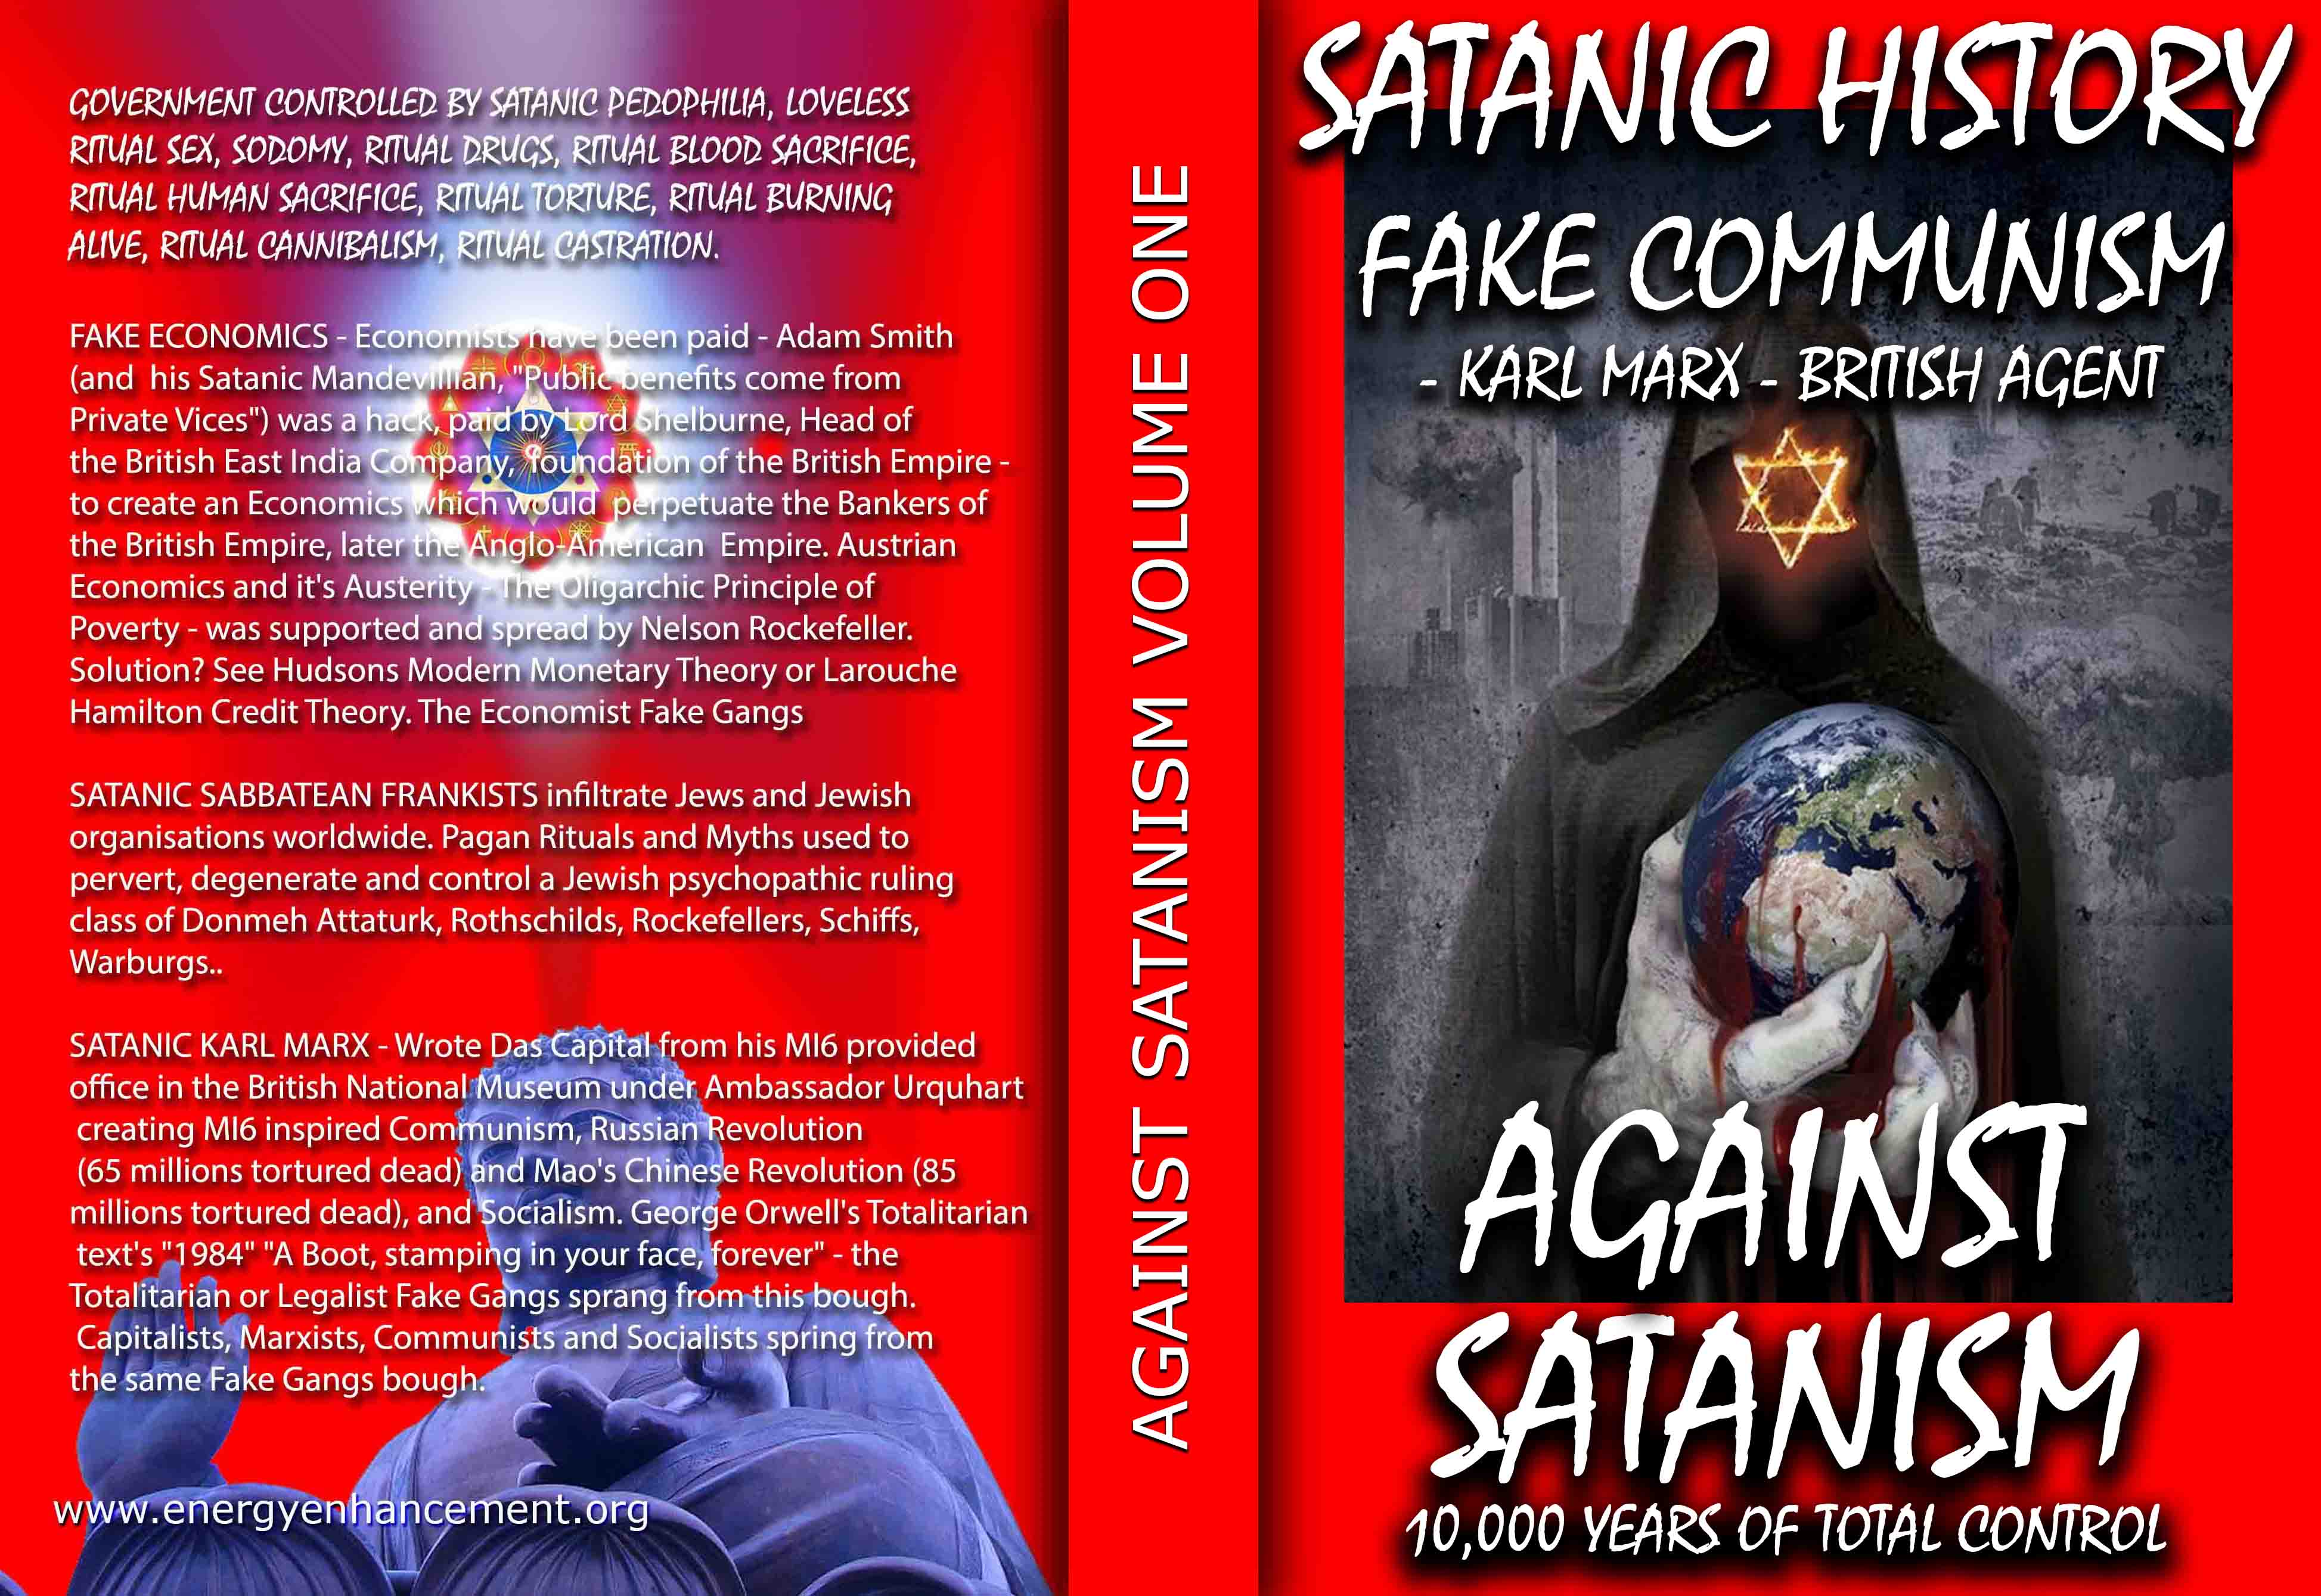 Description: Description: C:\wnew\Sacred-Energy\Against-Satanism\Satanism-Book-Vol-1-final.jpg